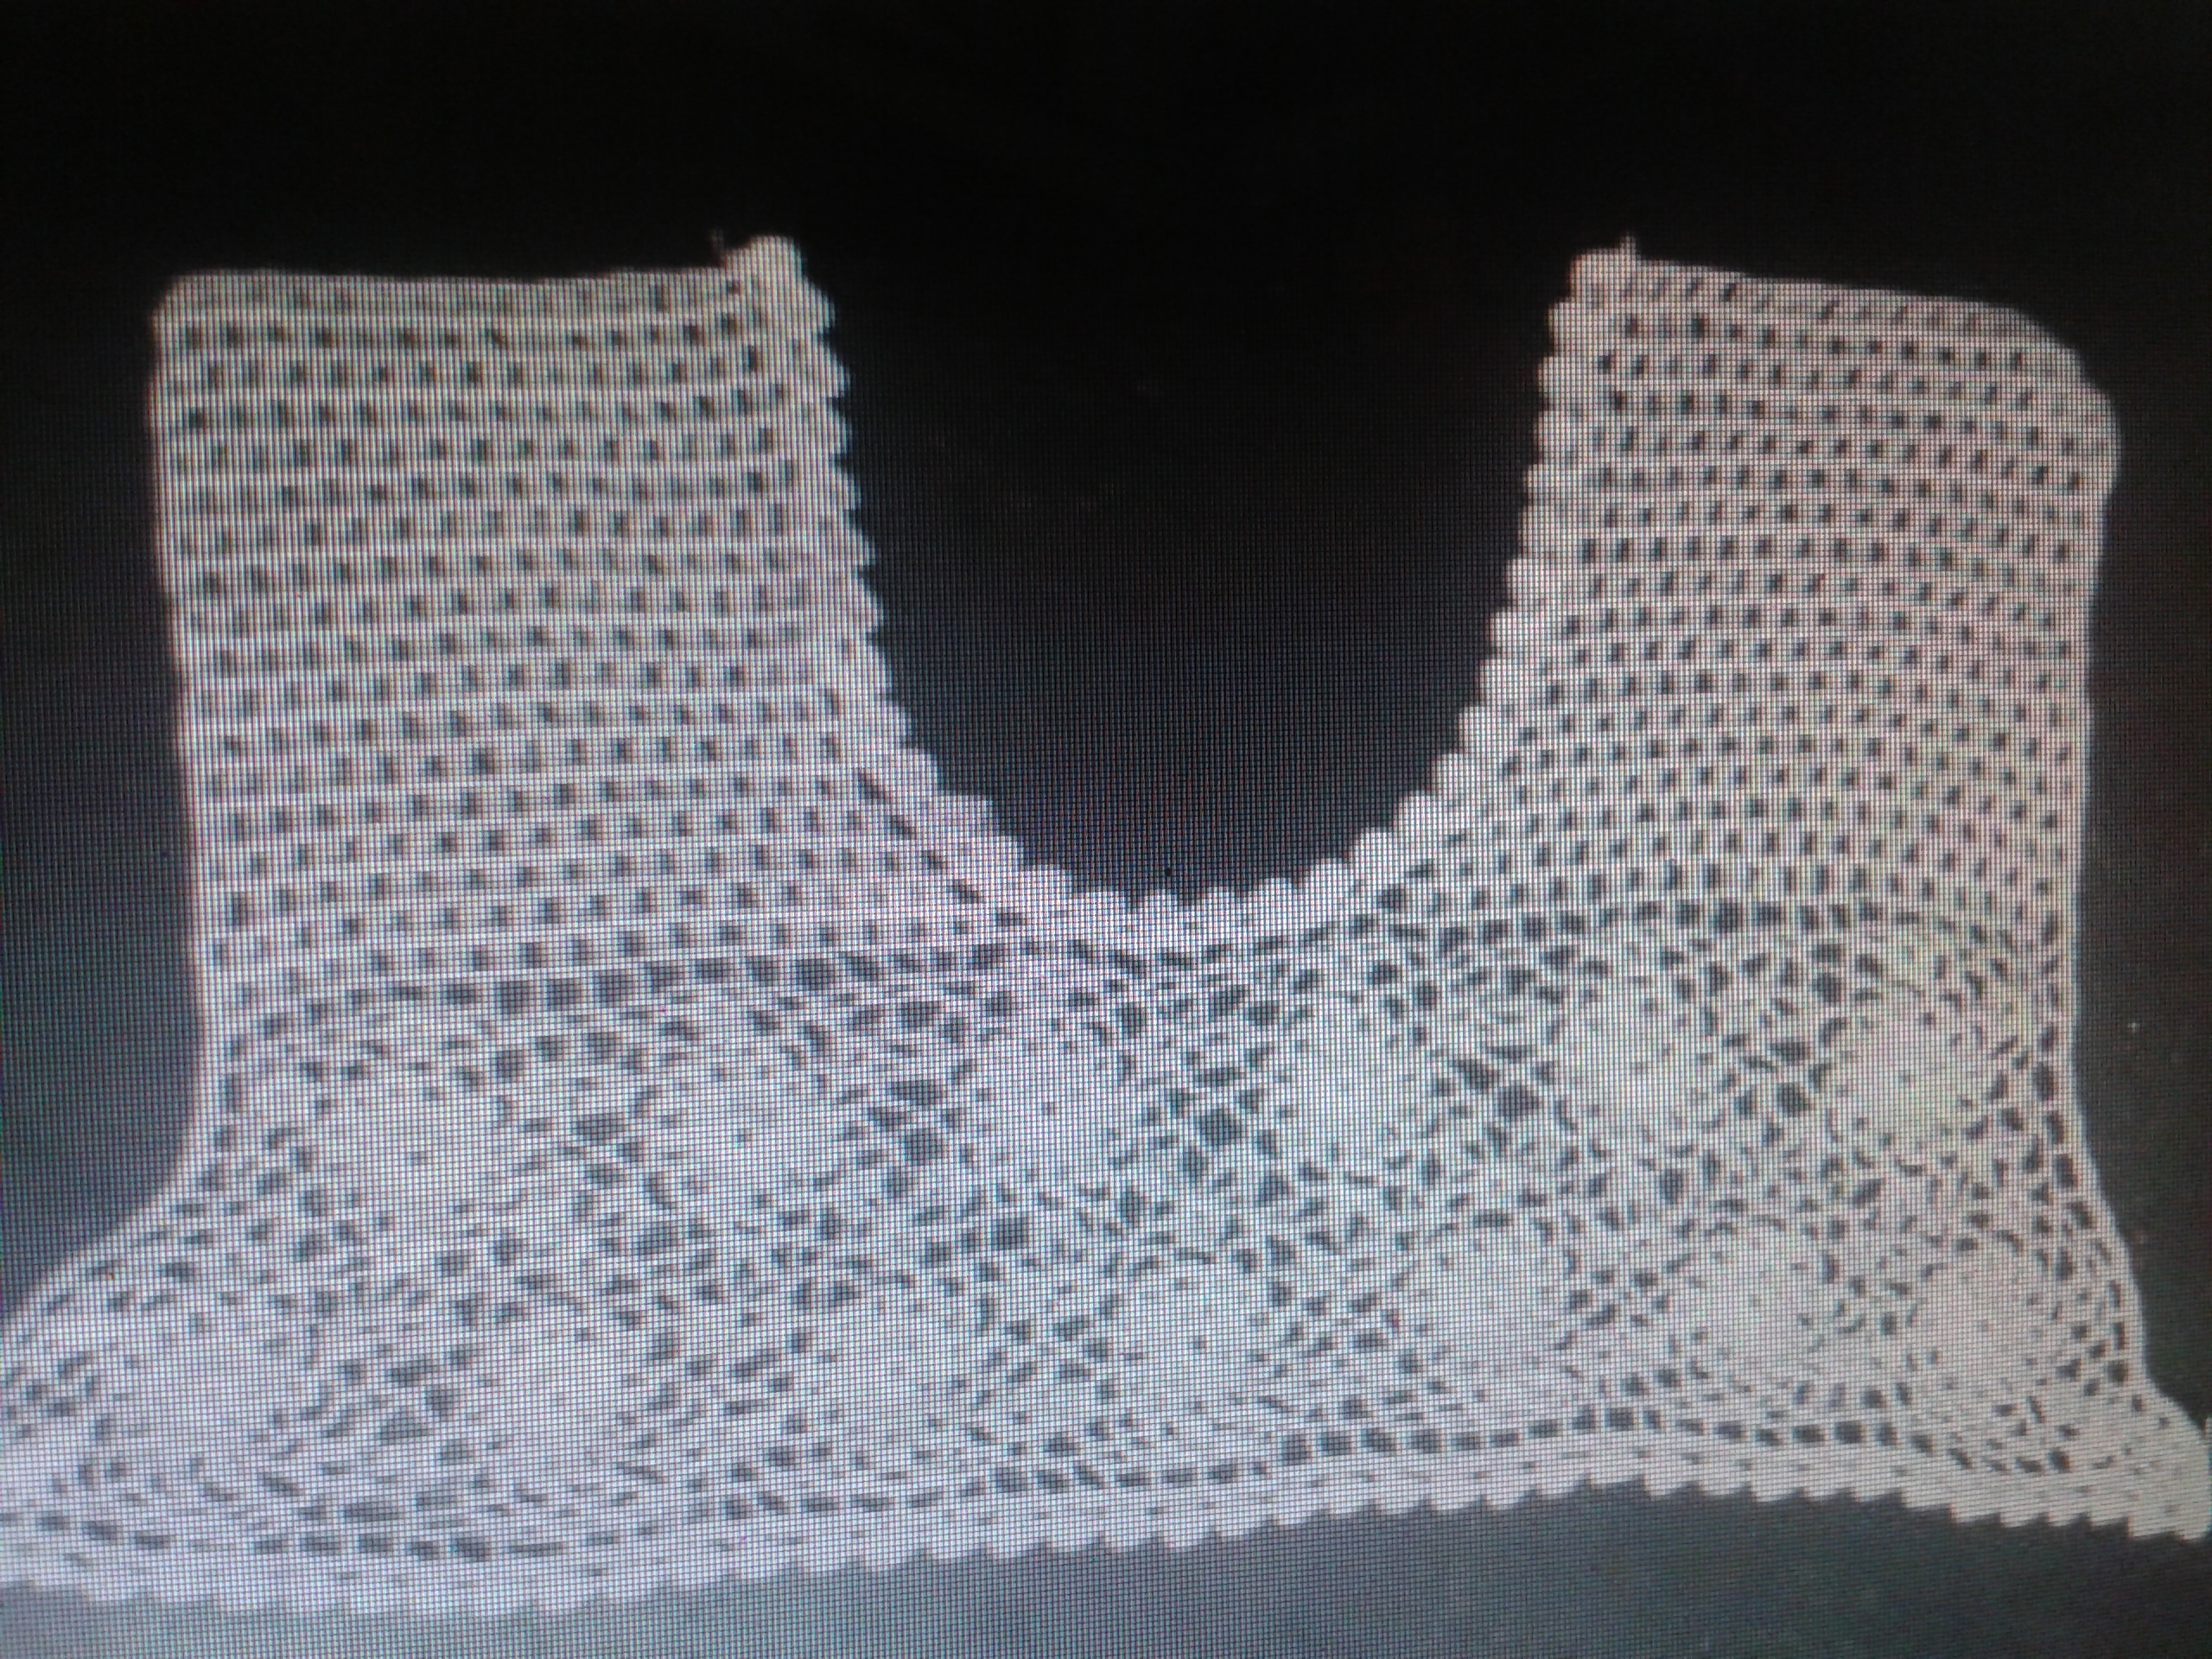 Hand crochet neck collars